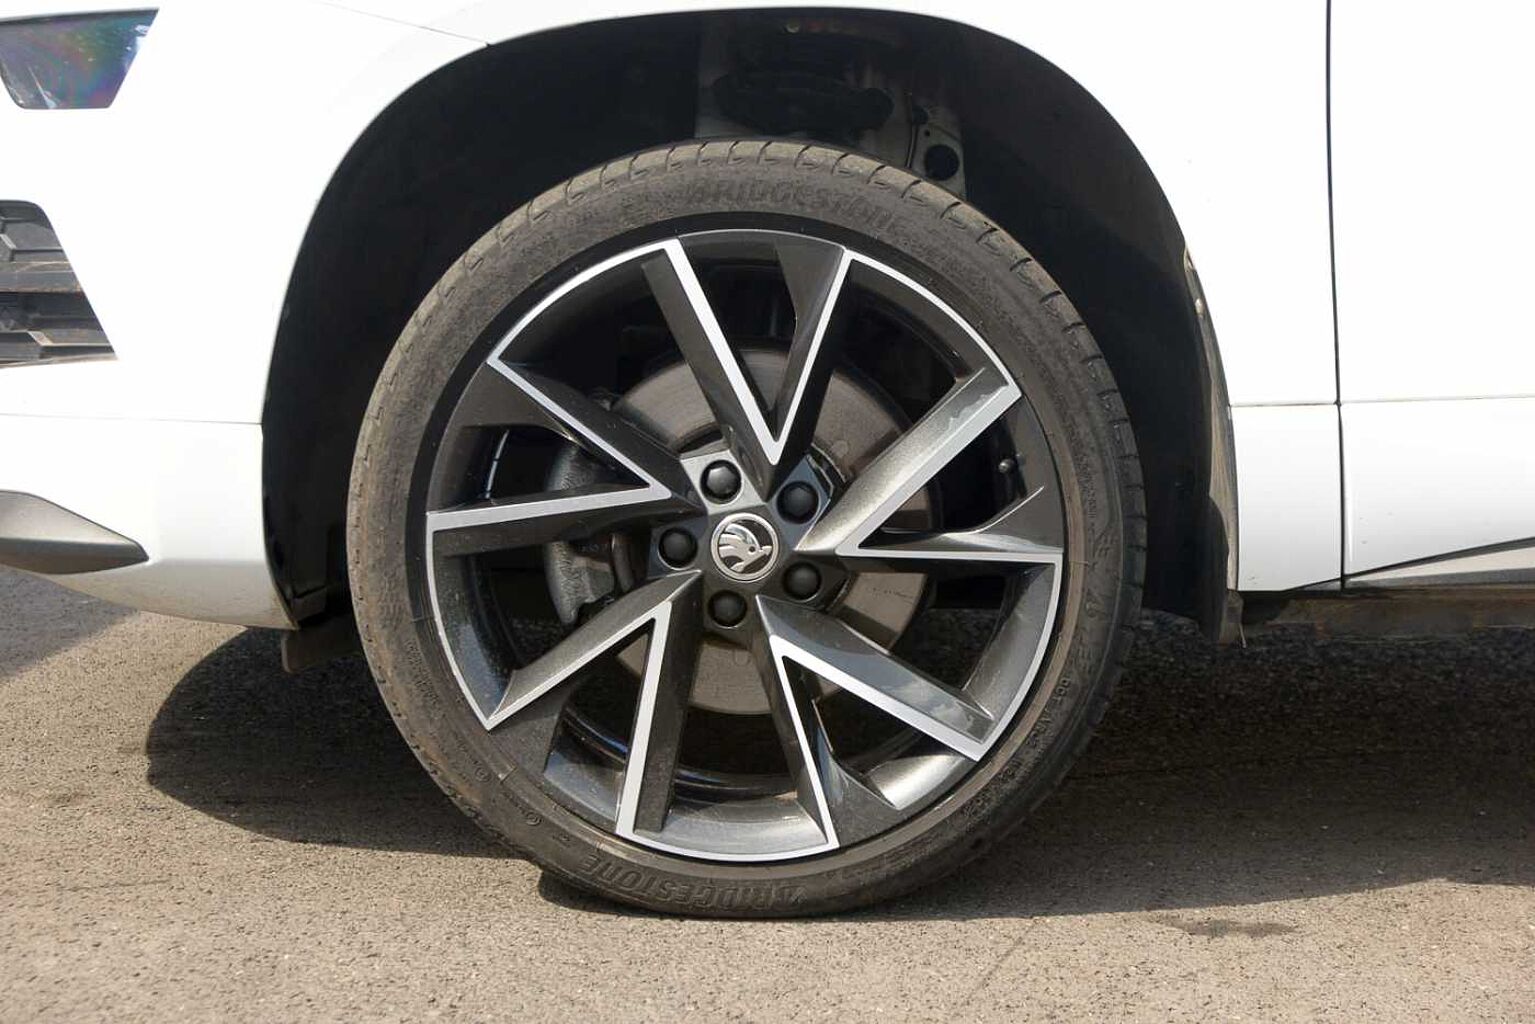 19 inch drop centre multi-spoke wheels for the Skoda Karoq